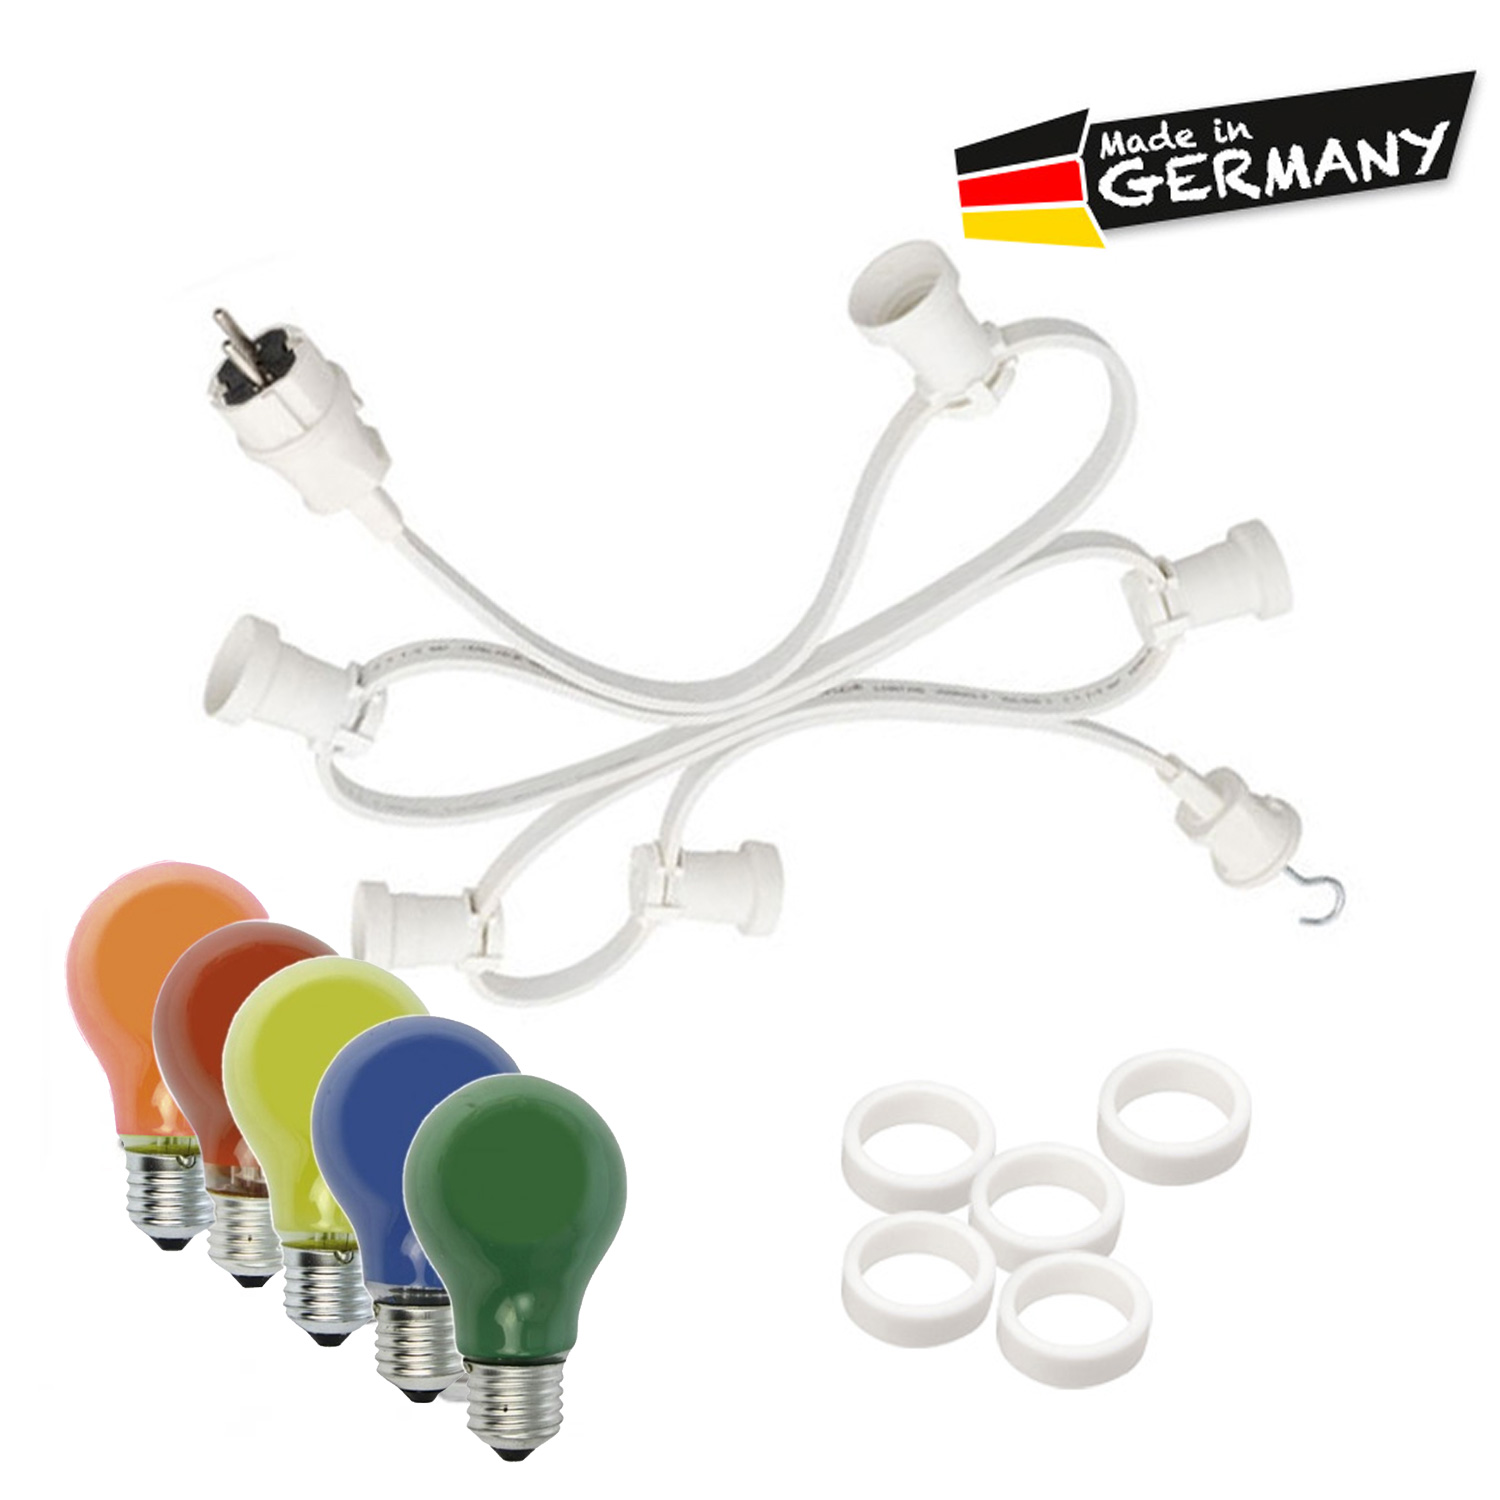 Illu-/Partylichterkette 20m - Außenlichterkette weiß - Made in Germany - 20 x bunte 25W Glühlampen